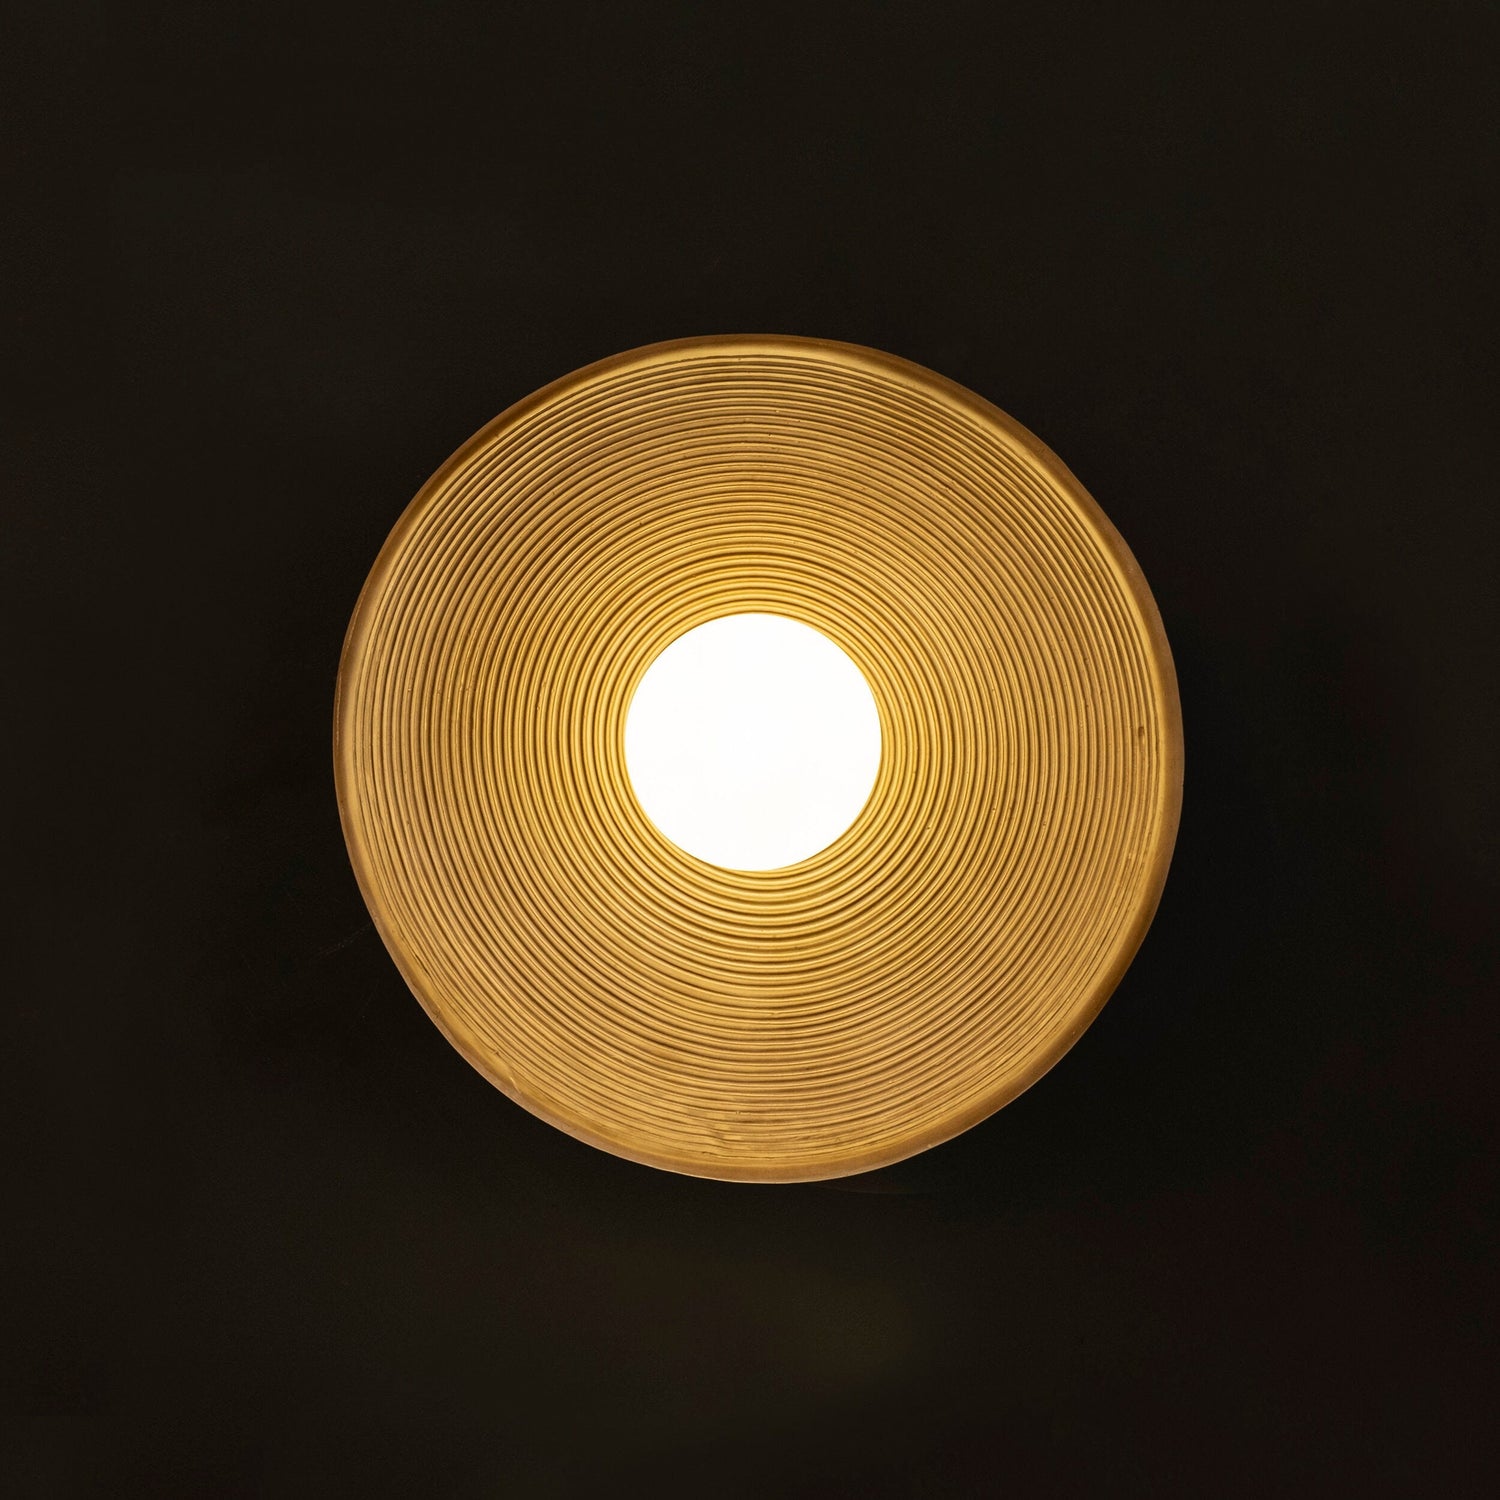 Pendant Lamp, Art Deco Lighting, Housewarming Gift Hanging Light, Modern Home Decor Lighting MODEL : FLORA